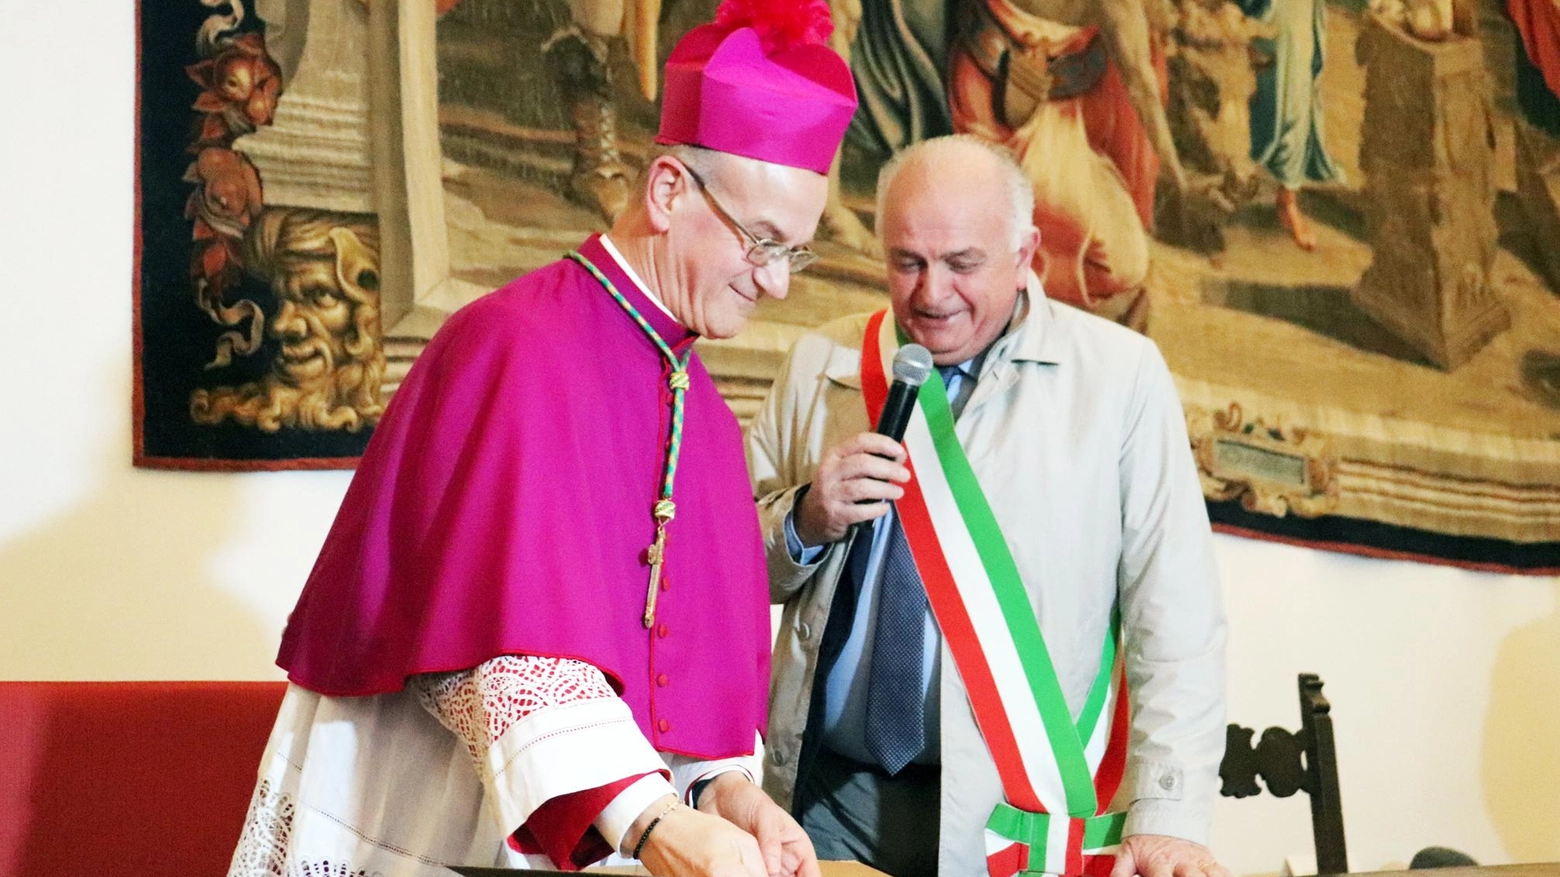 Una sola diocesi è realtà  Don Sandro entra a Urbino  Duomo gremito, tutti felici